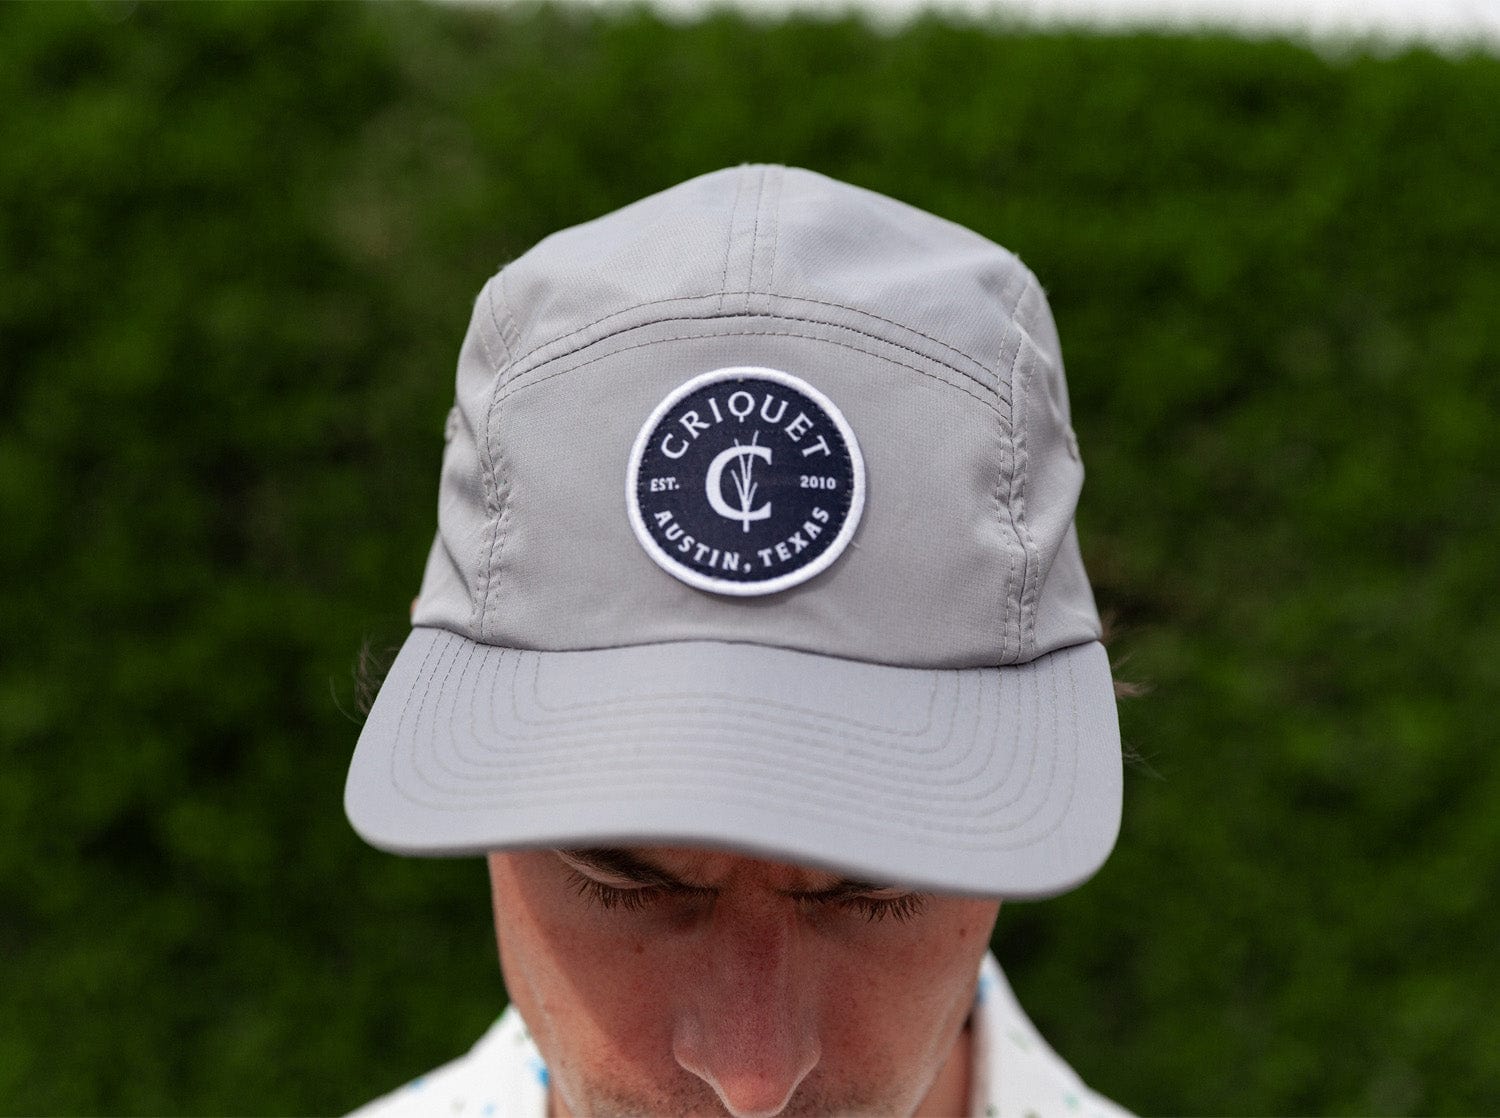 5 Panel Hat - Criquet Badge - Gray